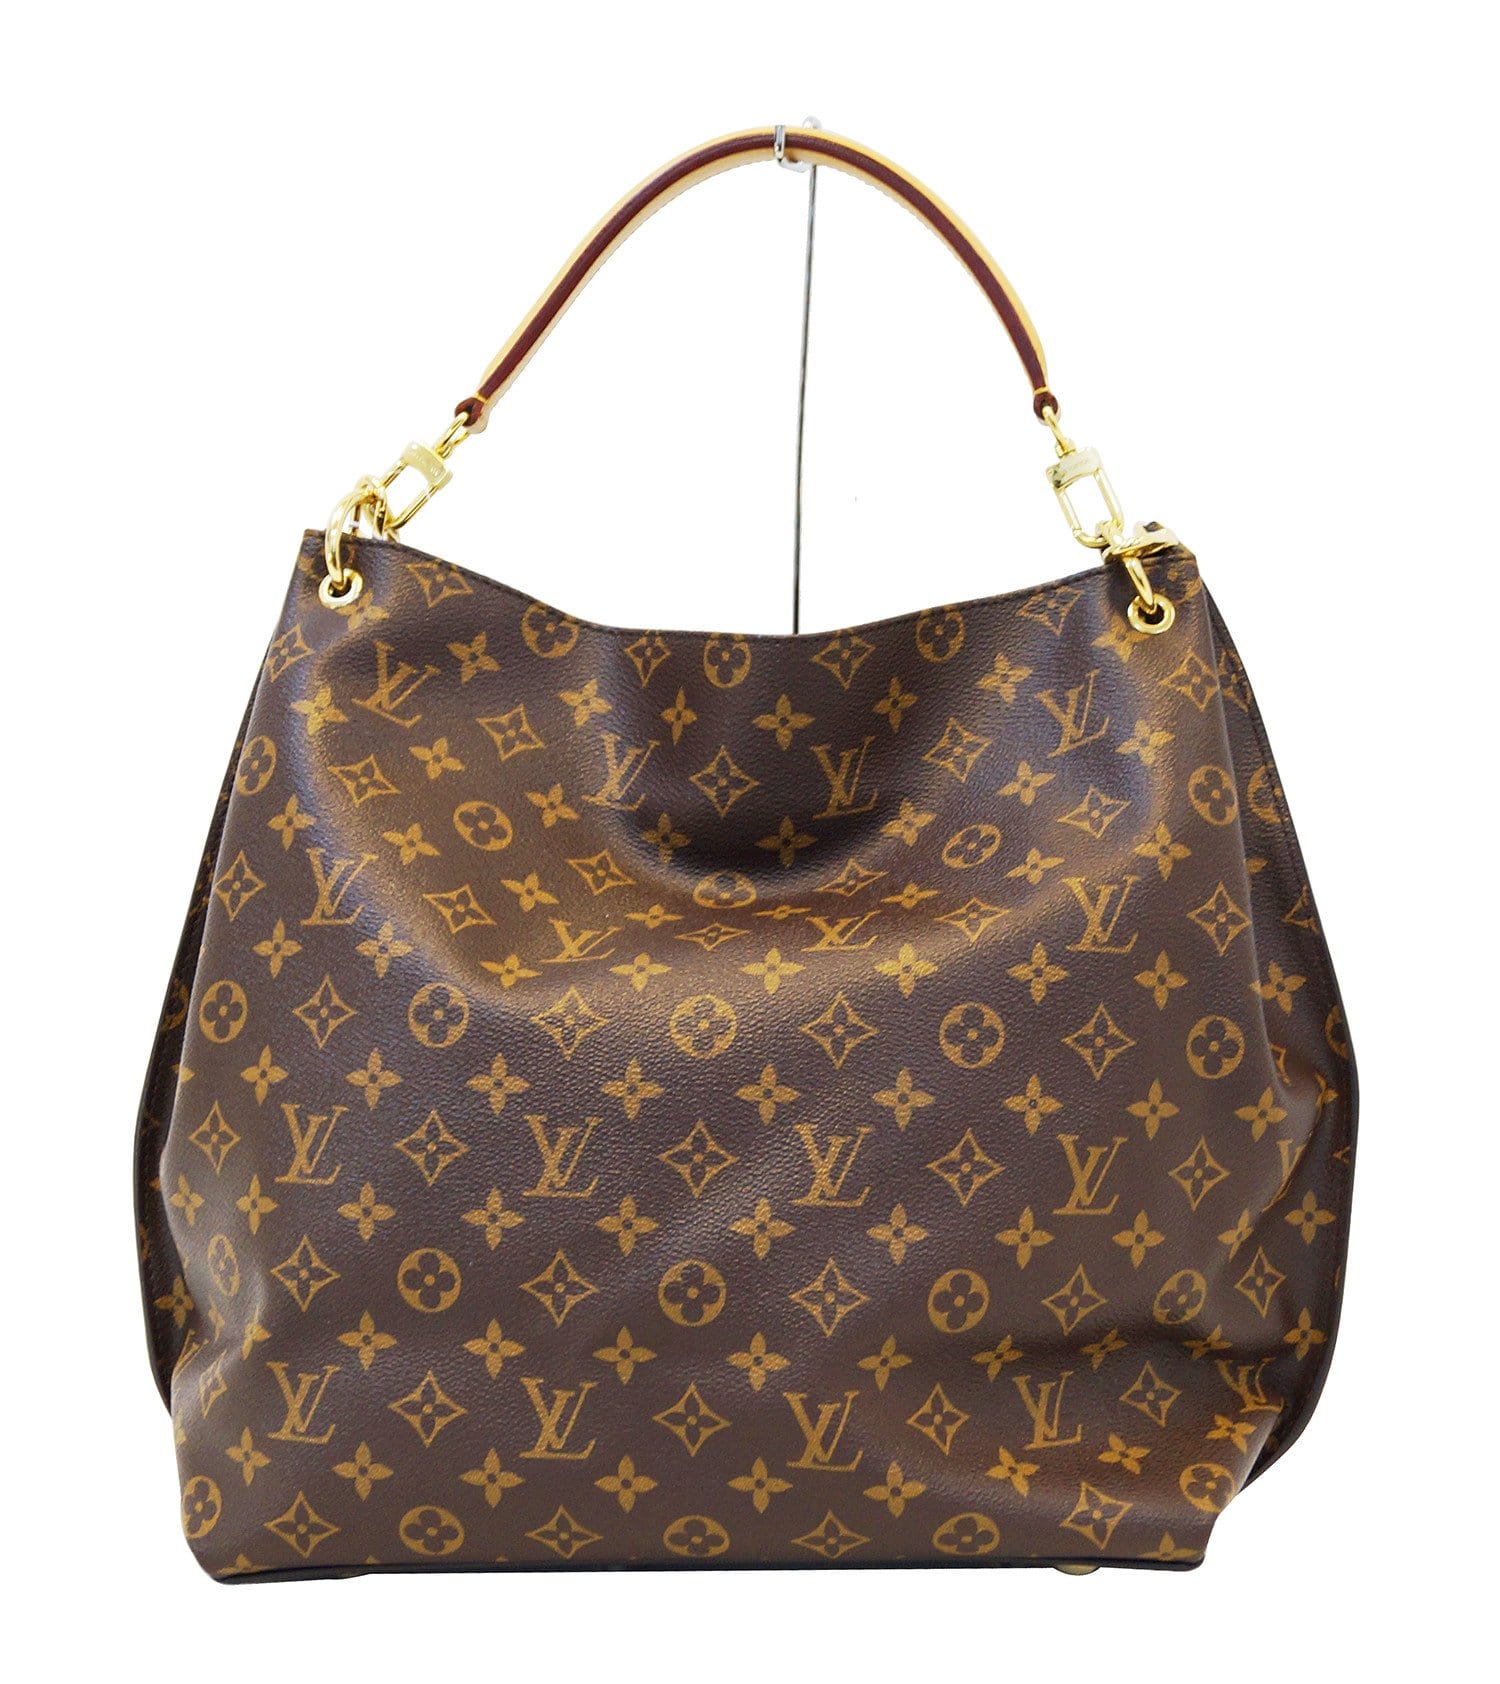 Vintage Louis Vuitton Metis Hobo Monogram Bag 